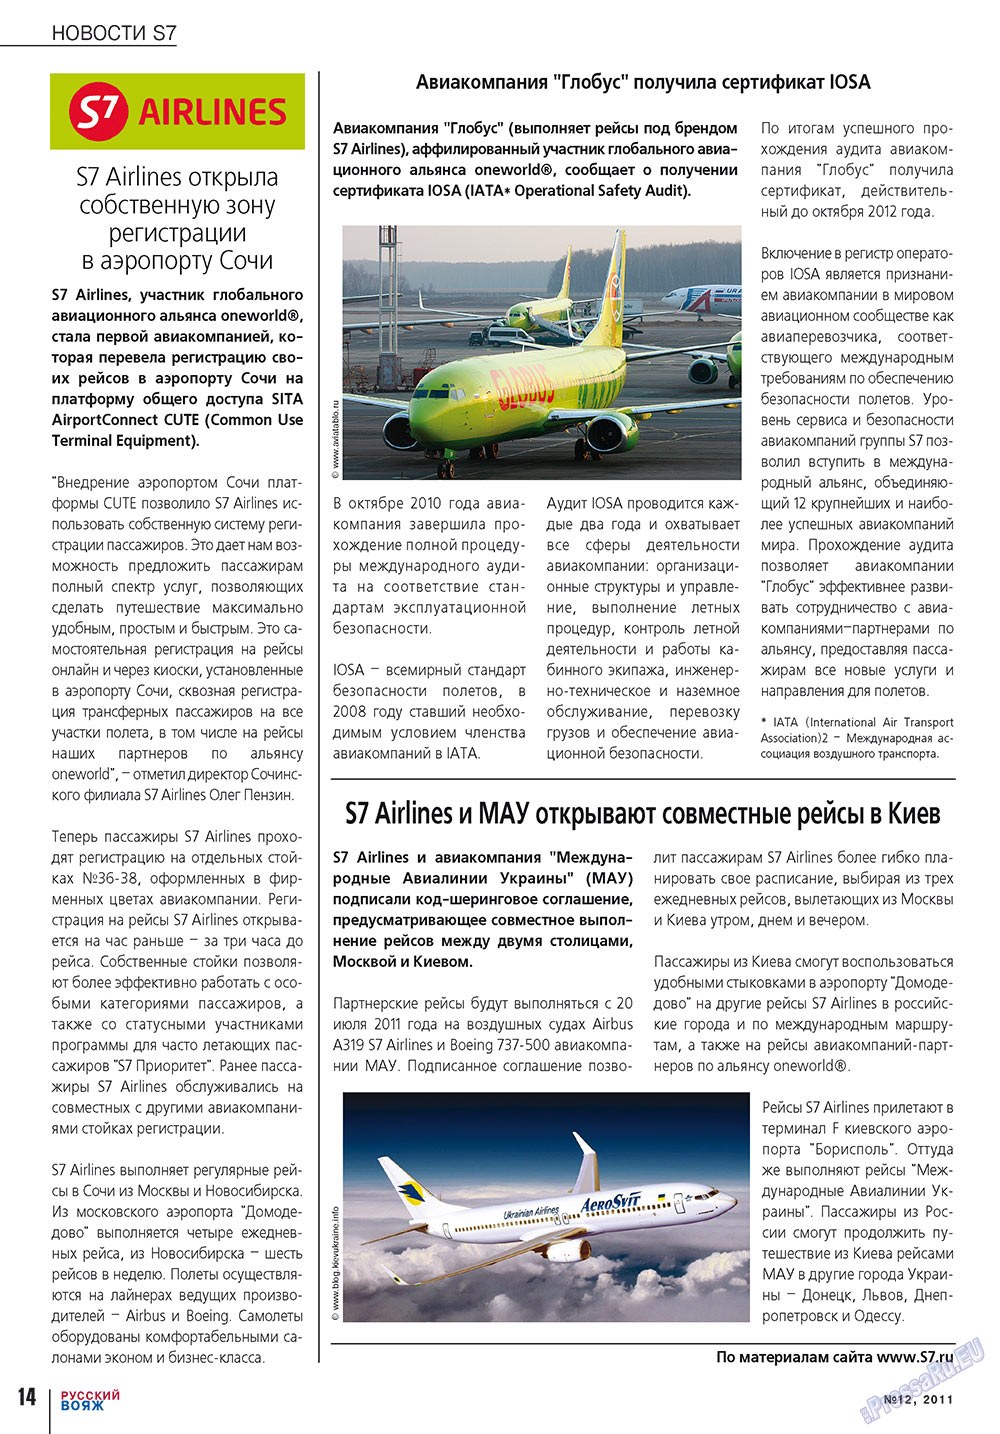 Русский вояж (журнал). 2011 год, номер 12, стр. 14